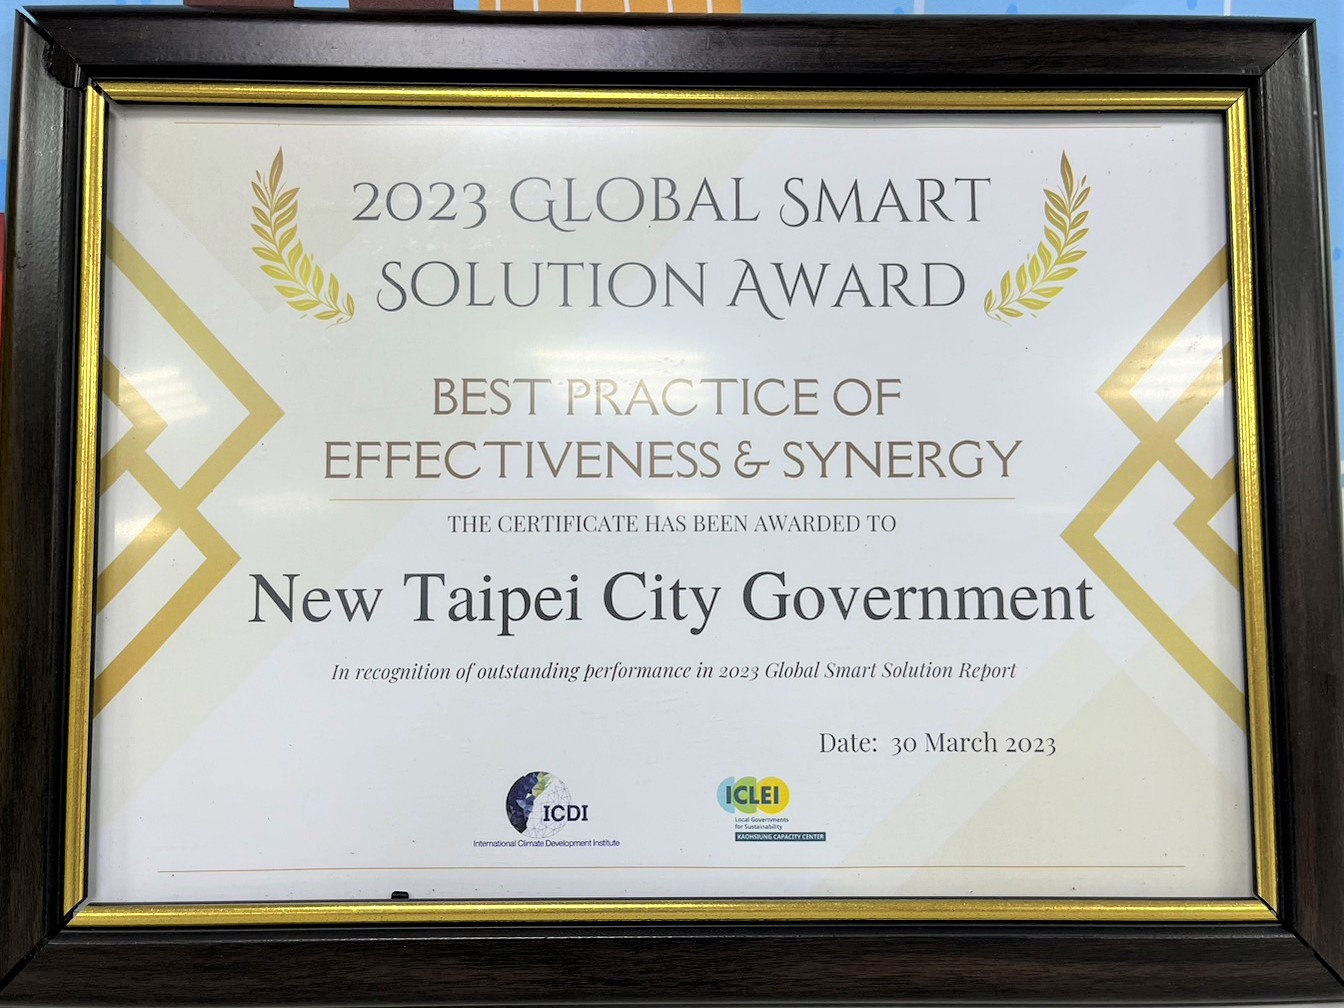 2.新北市榮獲「2023年全球智慧解決方案」成效與協同力(Effectiveness & Synergy)指標最佳獎